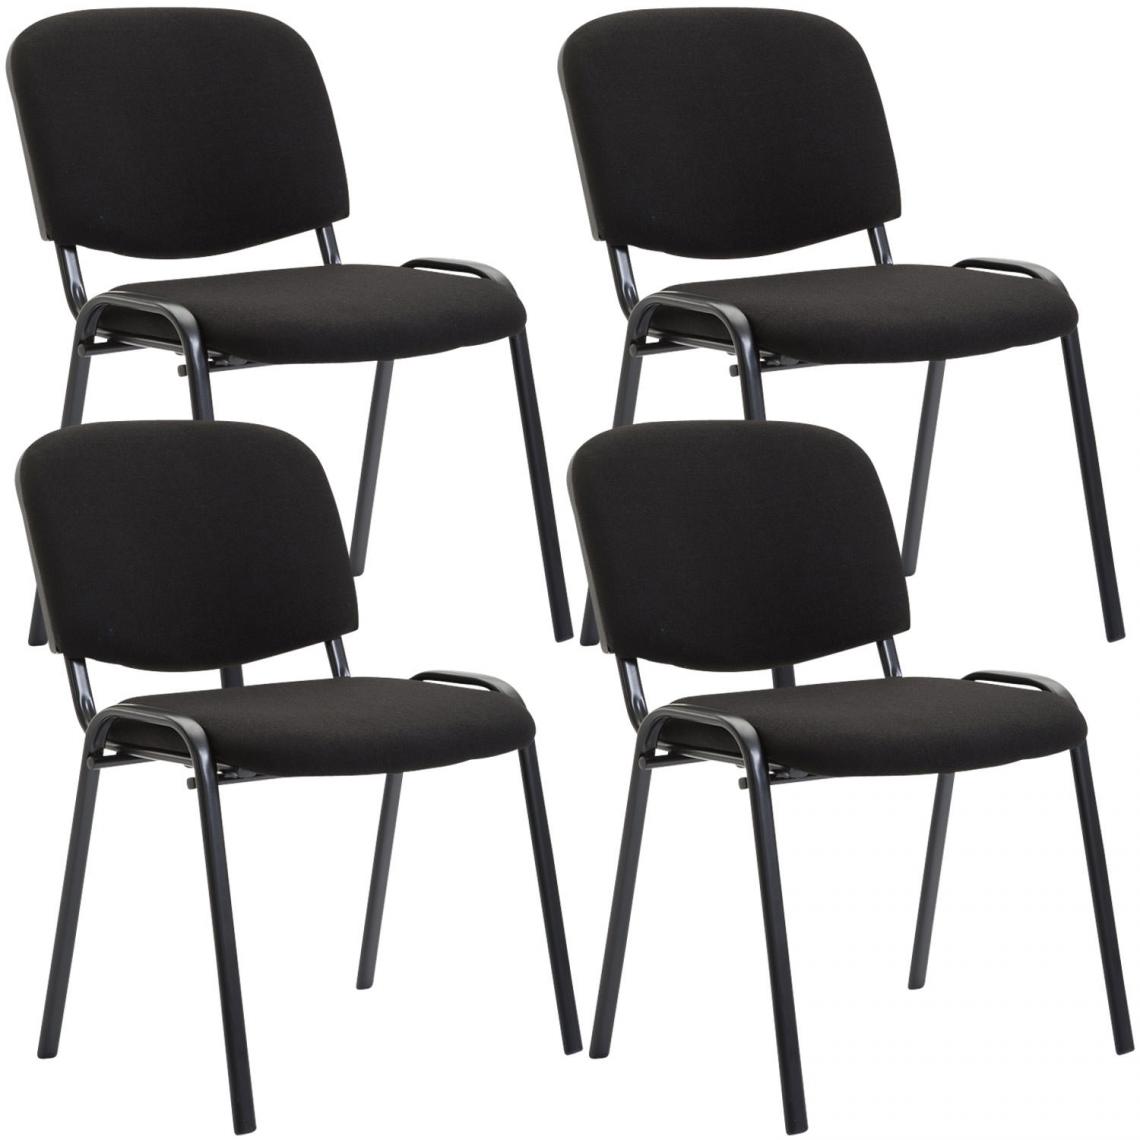 Icaverne - Stylé Ensemble de 4 chaises visiteur en tissu gamme Bamako couleur noir - Chaises